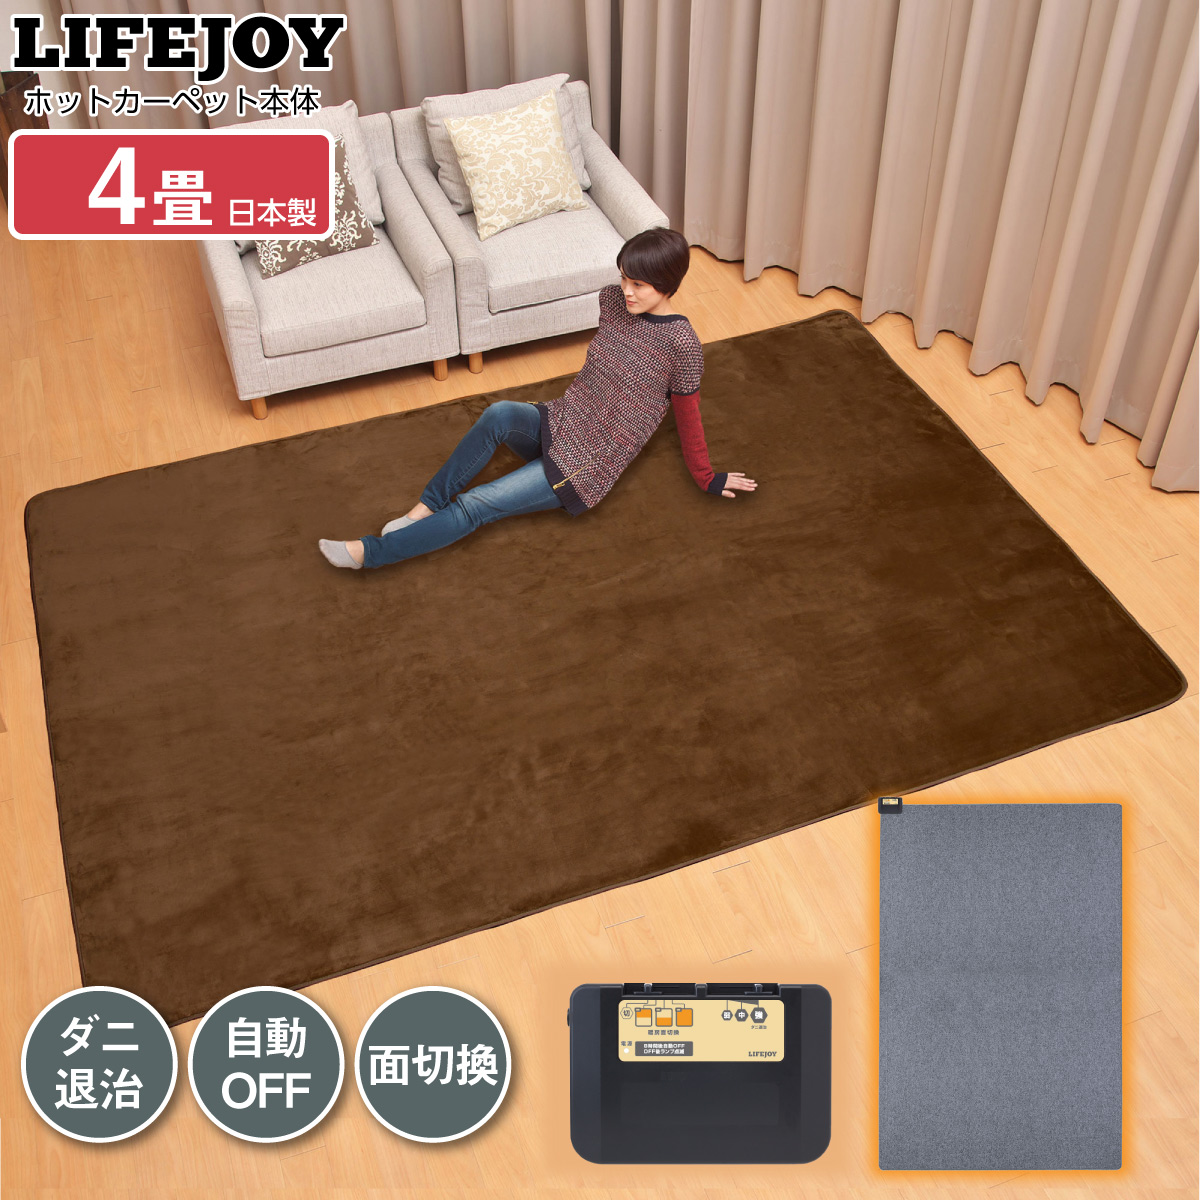 日本製 ホットカーペット 電気カーペット 4畳 290cm×195cm 暖房面 